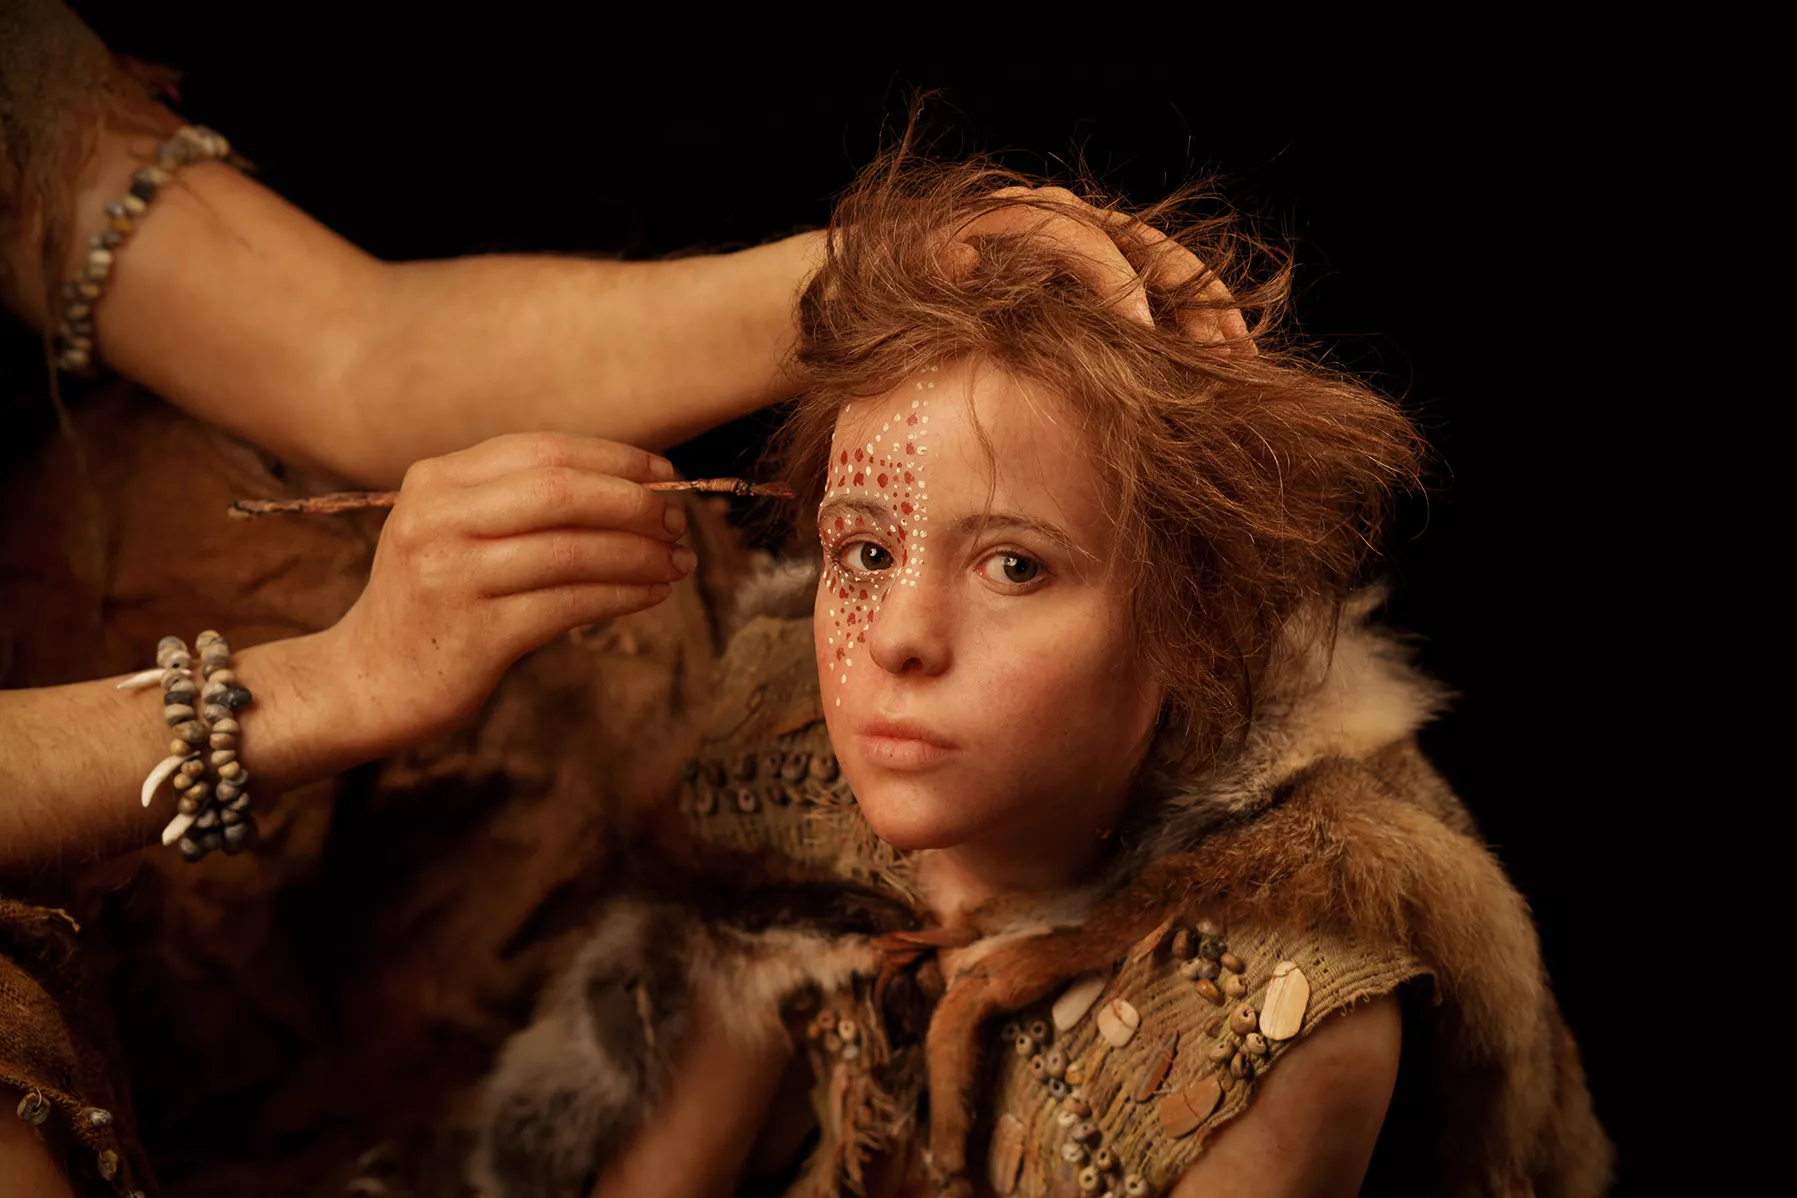 Reconstrucció d'un infant de la prehistòria feta per l'escultora francesa Éliasbeth Daynès